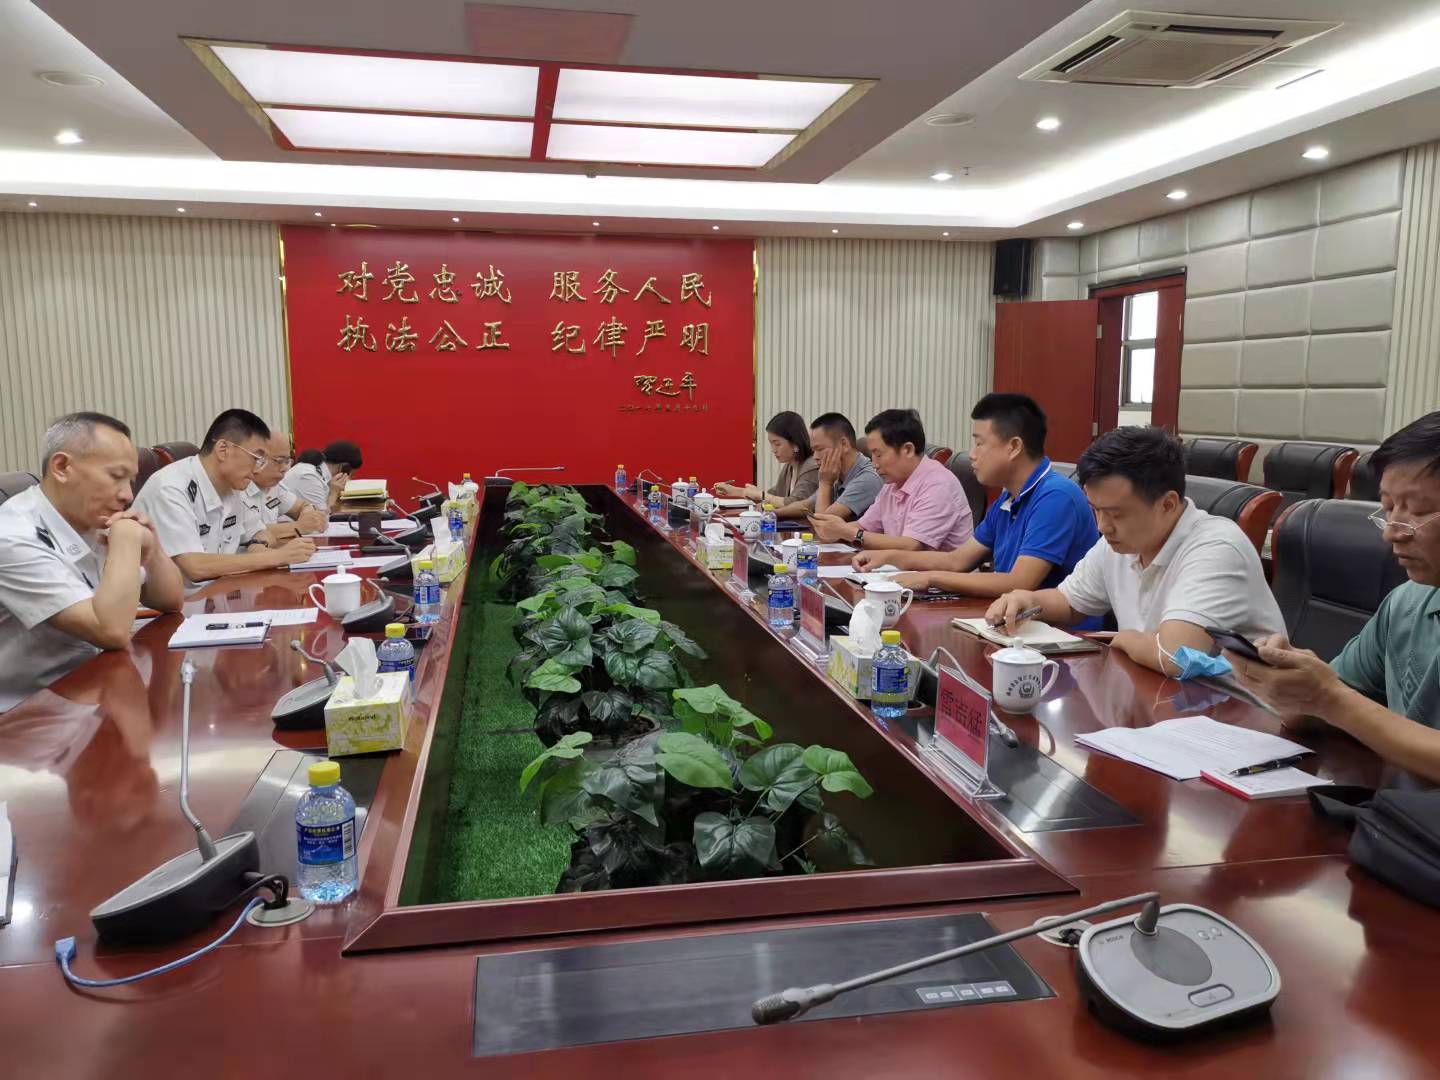 海南省交警总队邀请行业驾驶人代表座谈听民意